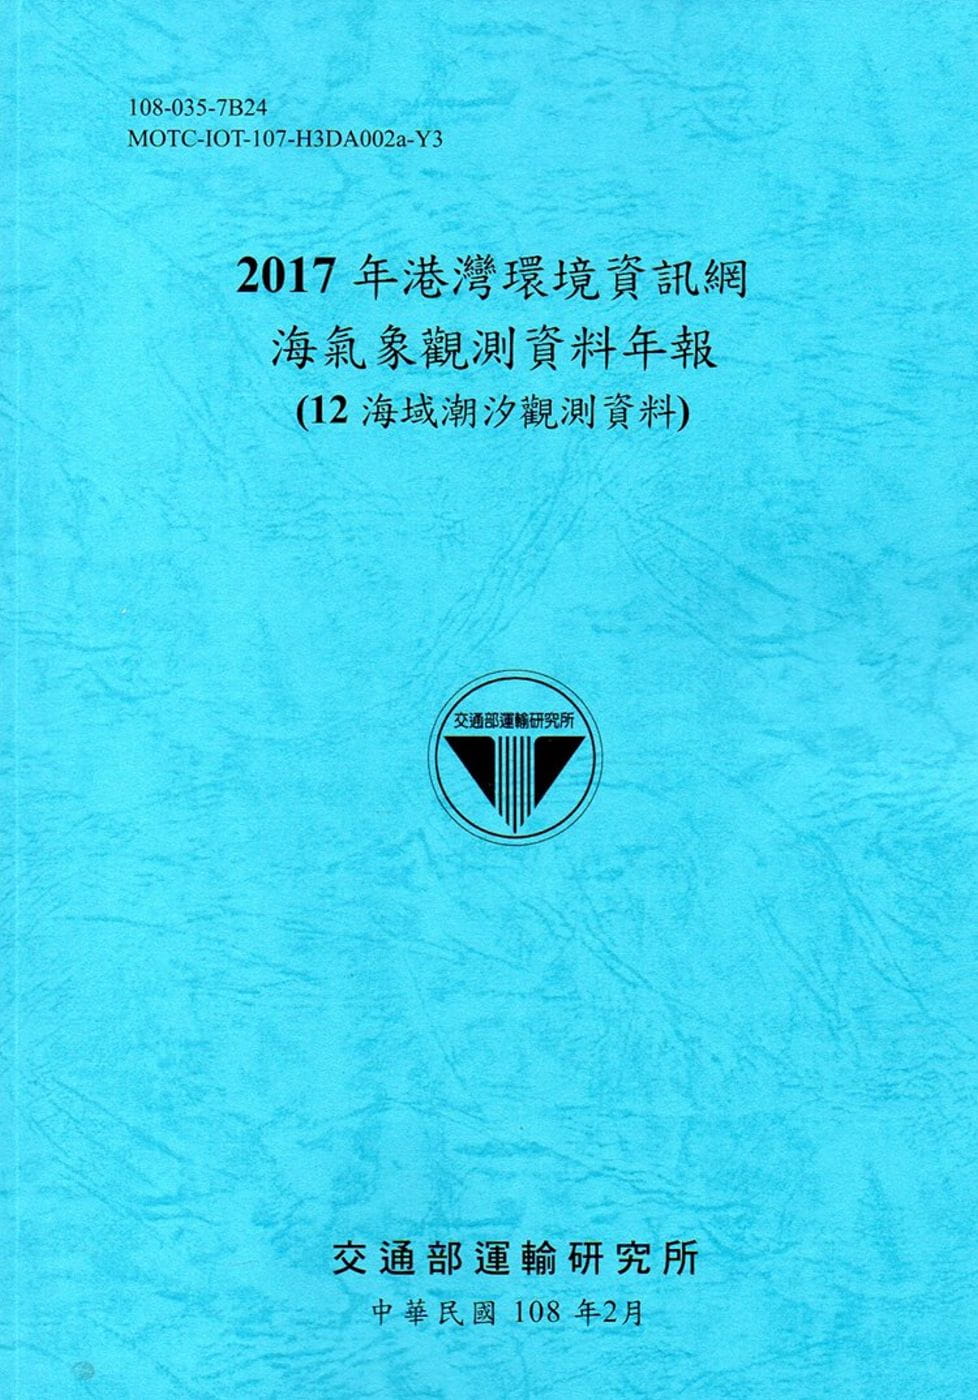 2017年港灣環境資訊網海氣象觀測資料年報(12海域潮汐觀測資料)[108藍]